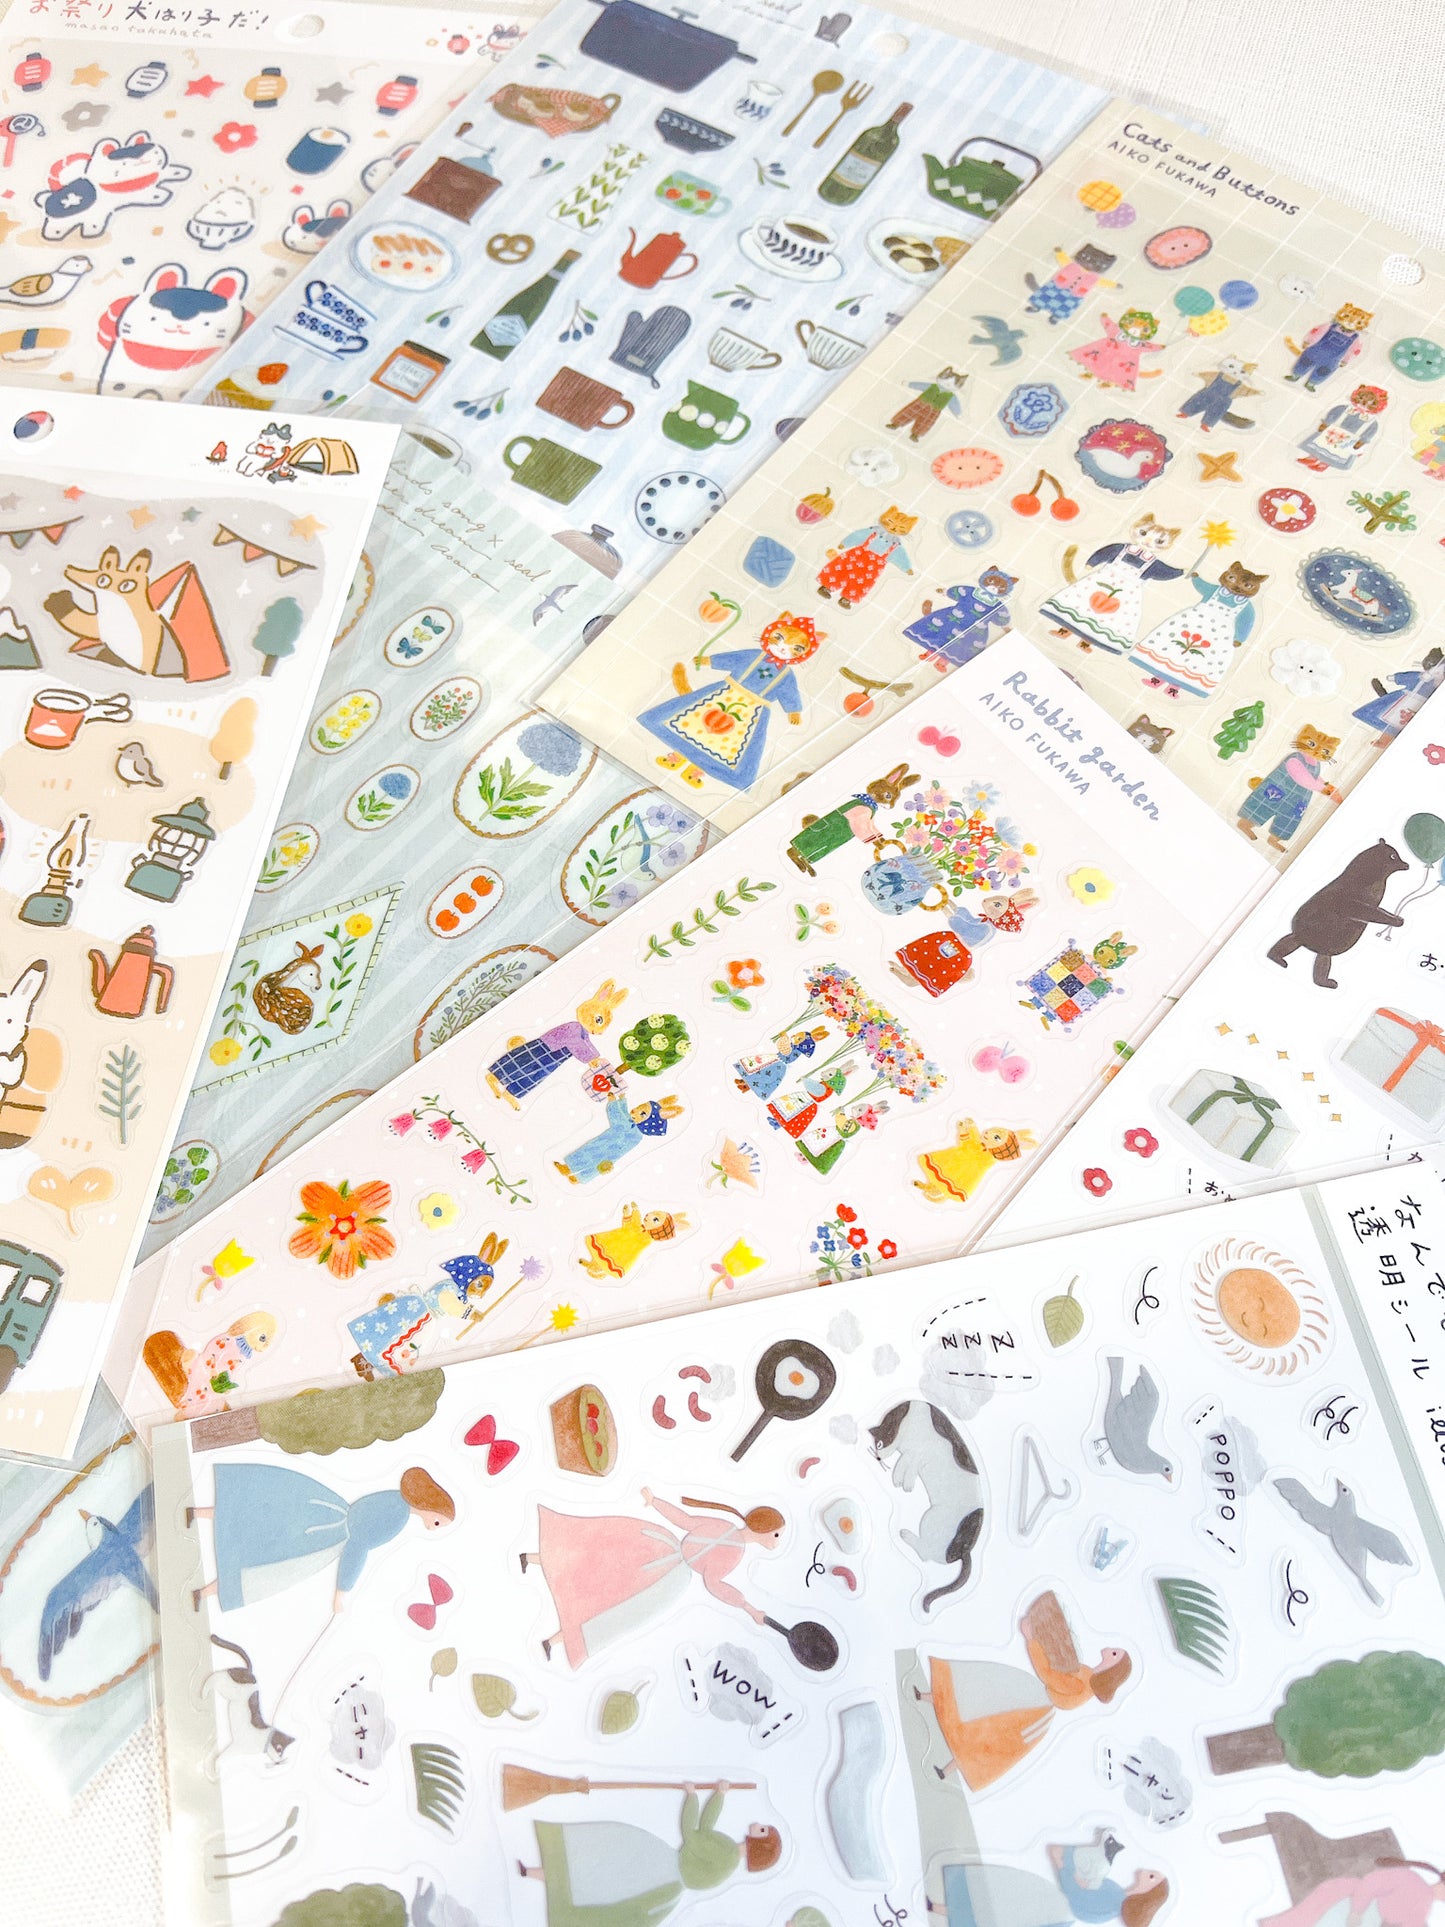 AIKO FUKAWA | Rabbit Garden Sticker Sheet | 22-876